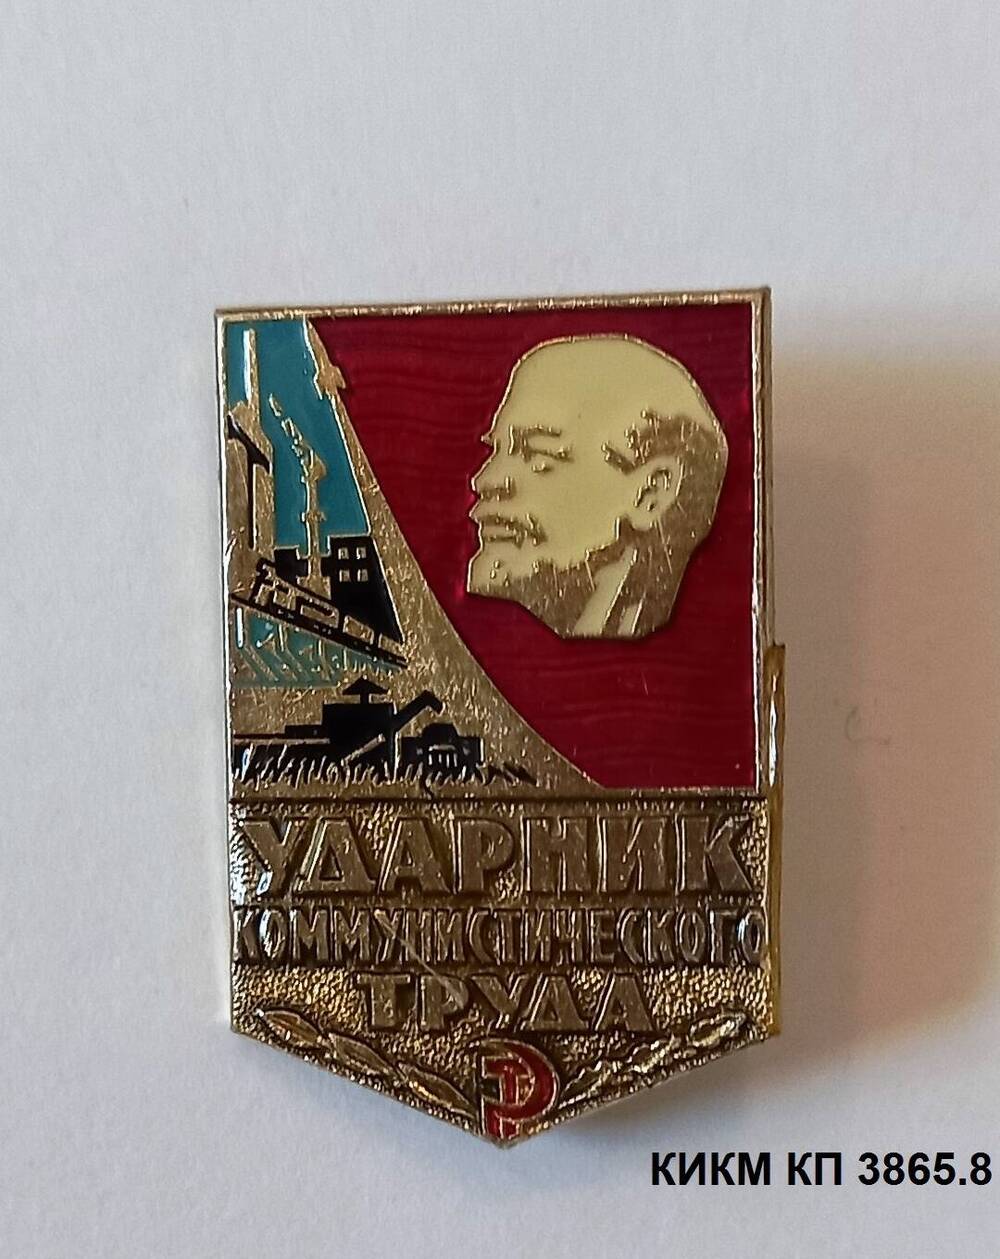 Значок Ударник коммунистического труда Флеминга Адольфа Августовича, токаря кранового завода.